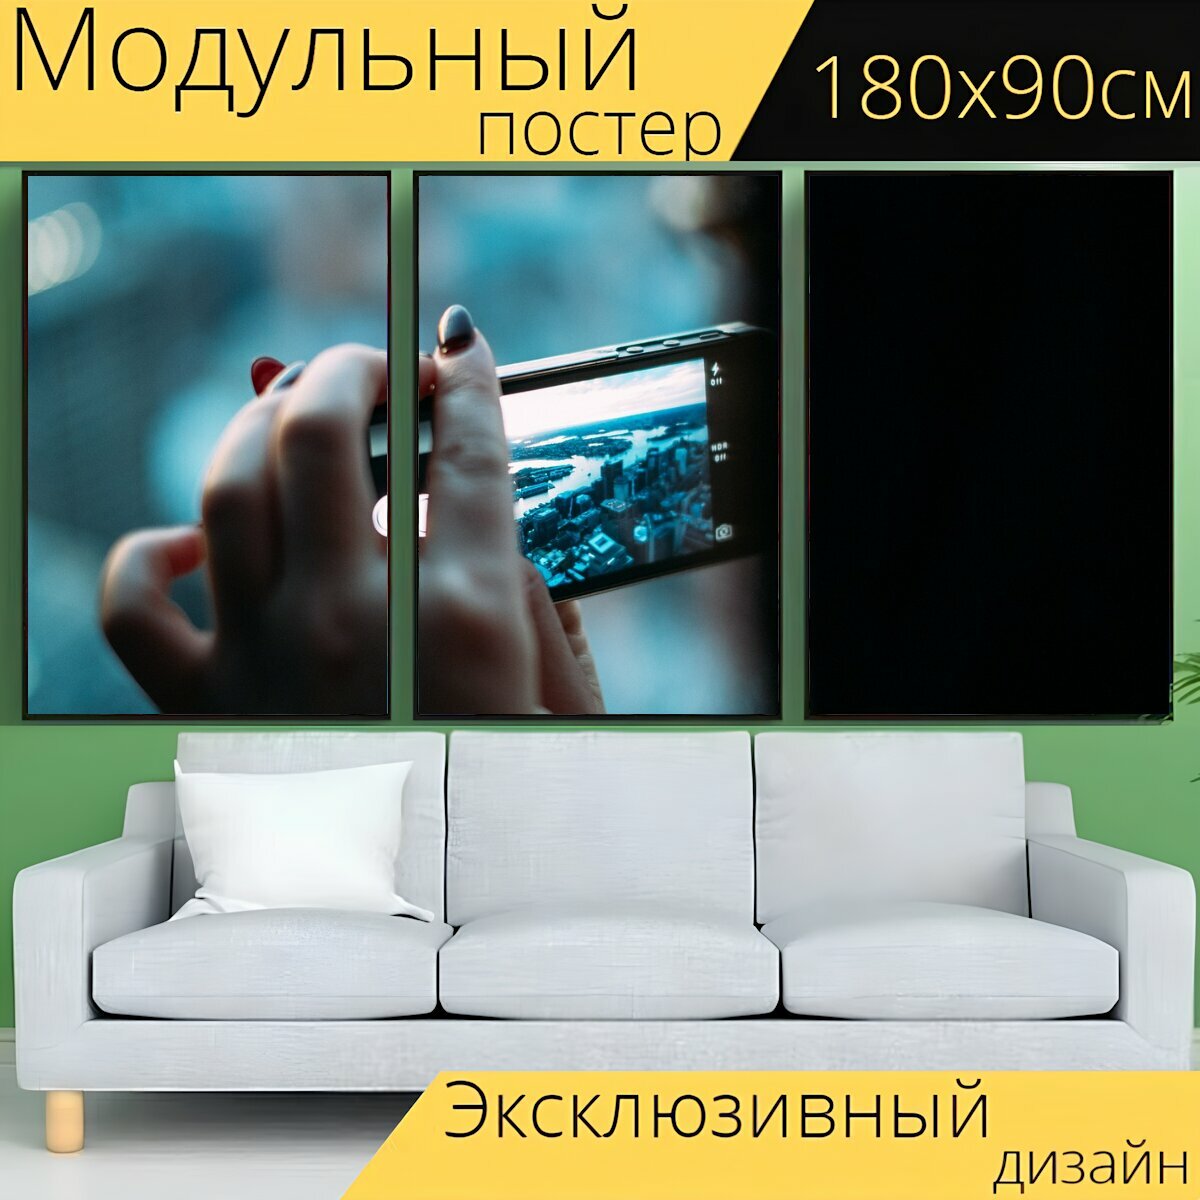 Модульный постер "Смартфон, цифровая камера, камера" 180 x 90 см. для интерьера